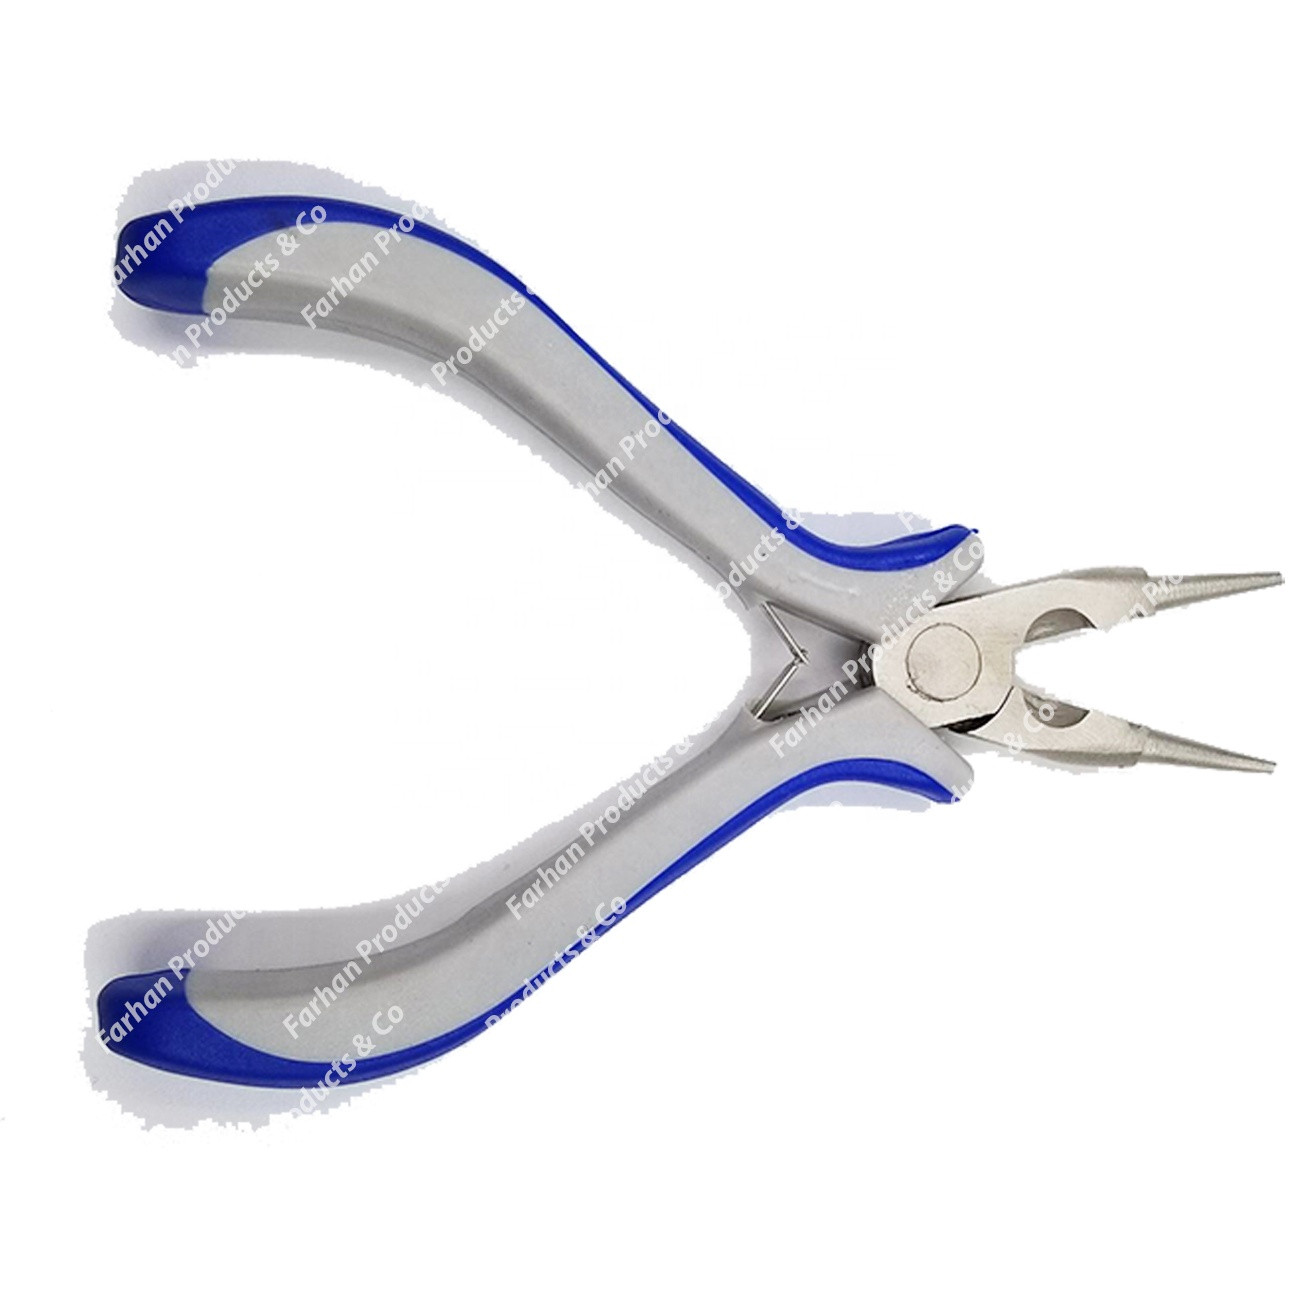 Side cutter - Round Nose Plier Flat plier (Grip)